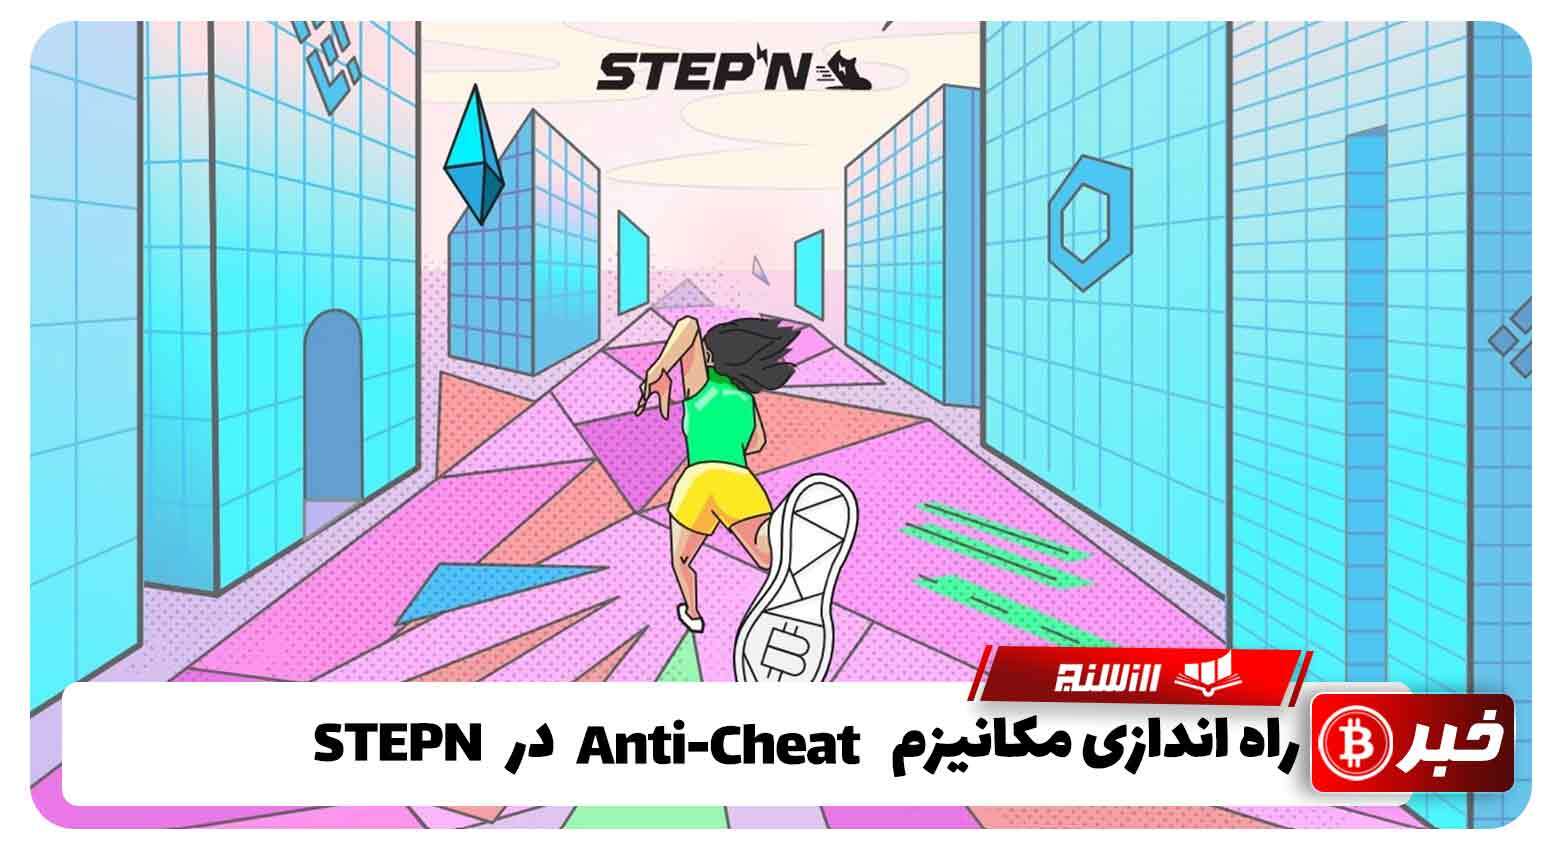 راه اندازی مکانیزم Anti-Cheatدر STEPN